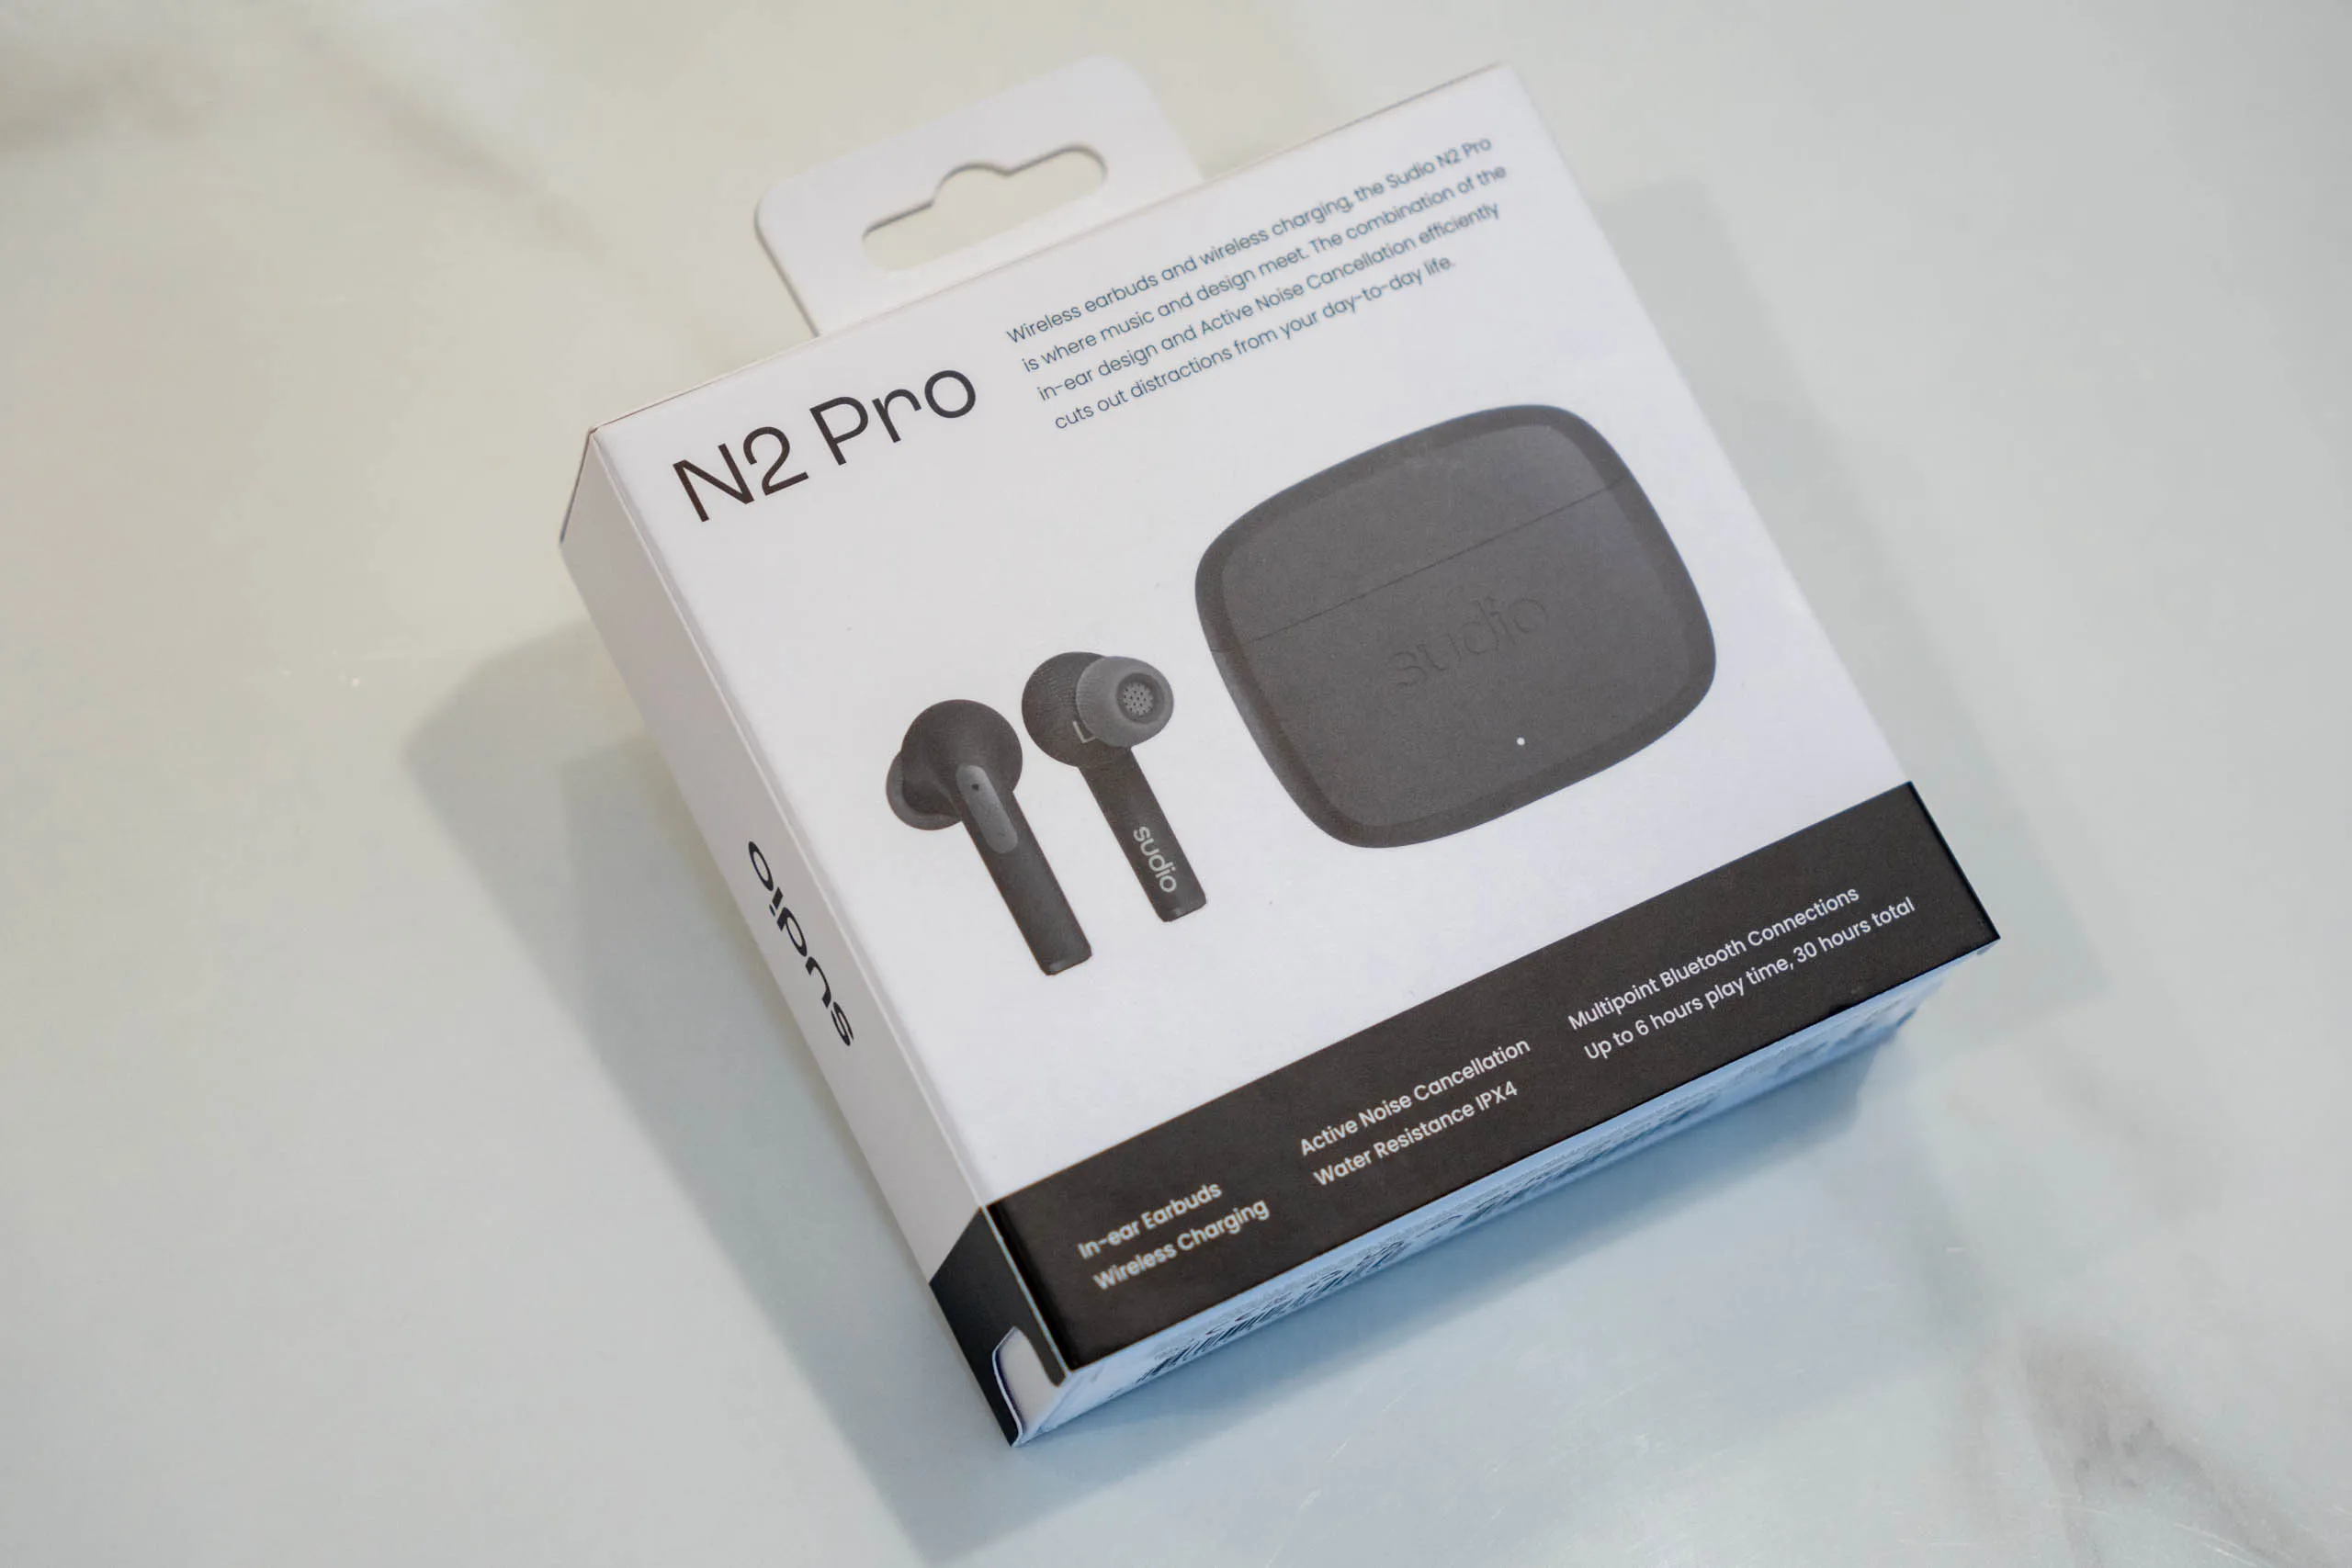 Đánh giá tai nghe không dây Sudio N2 Pro – Hoàn thiện đẹp, nhẹ, có chống ồn, chất âm tốt